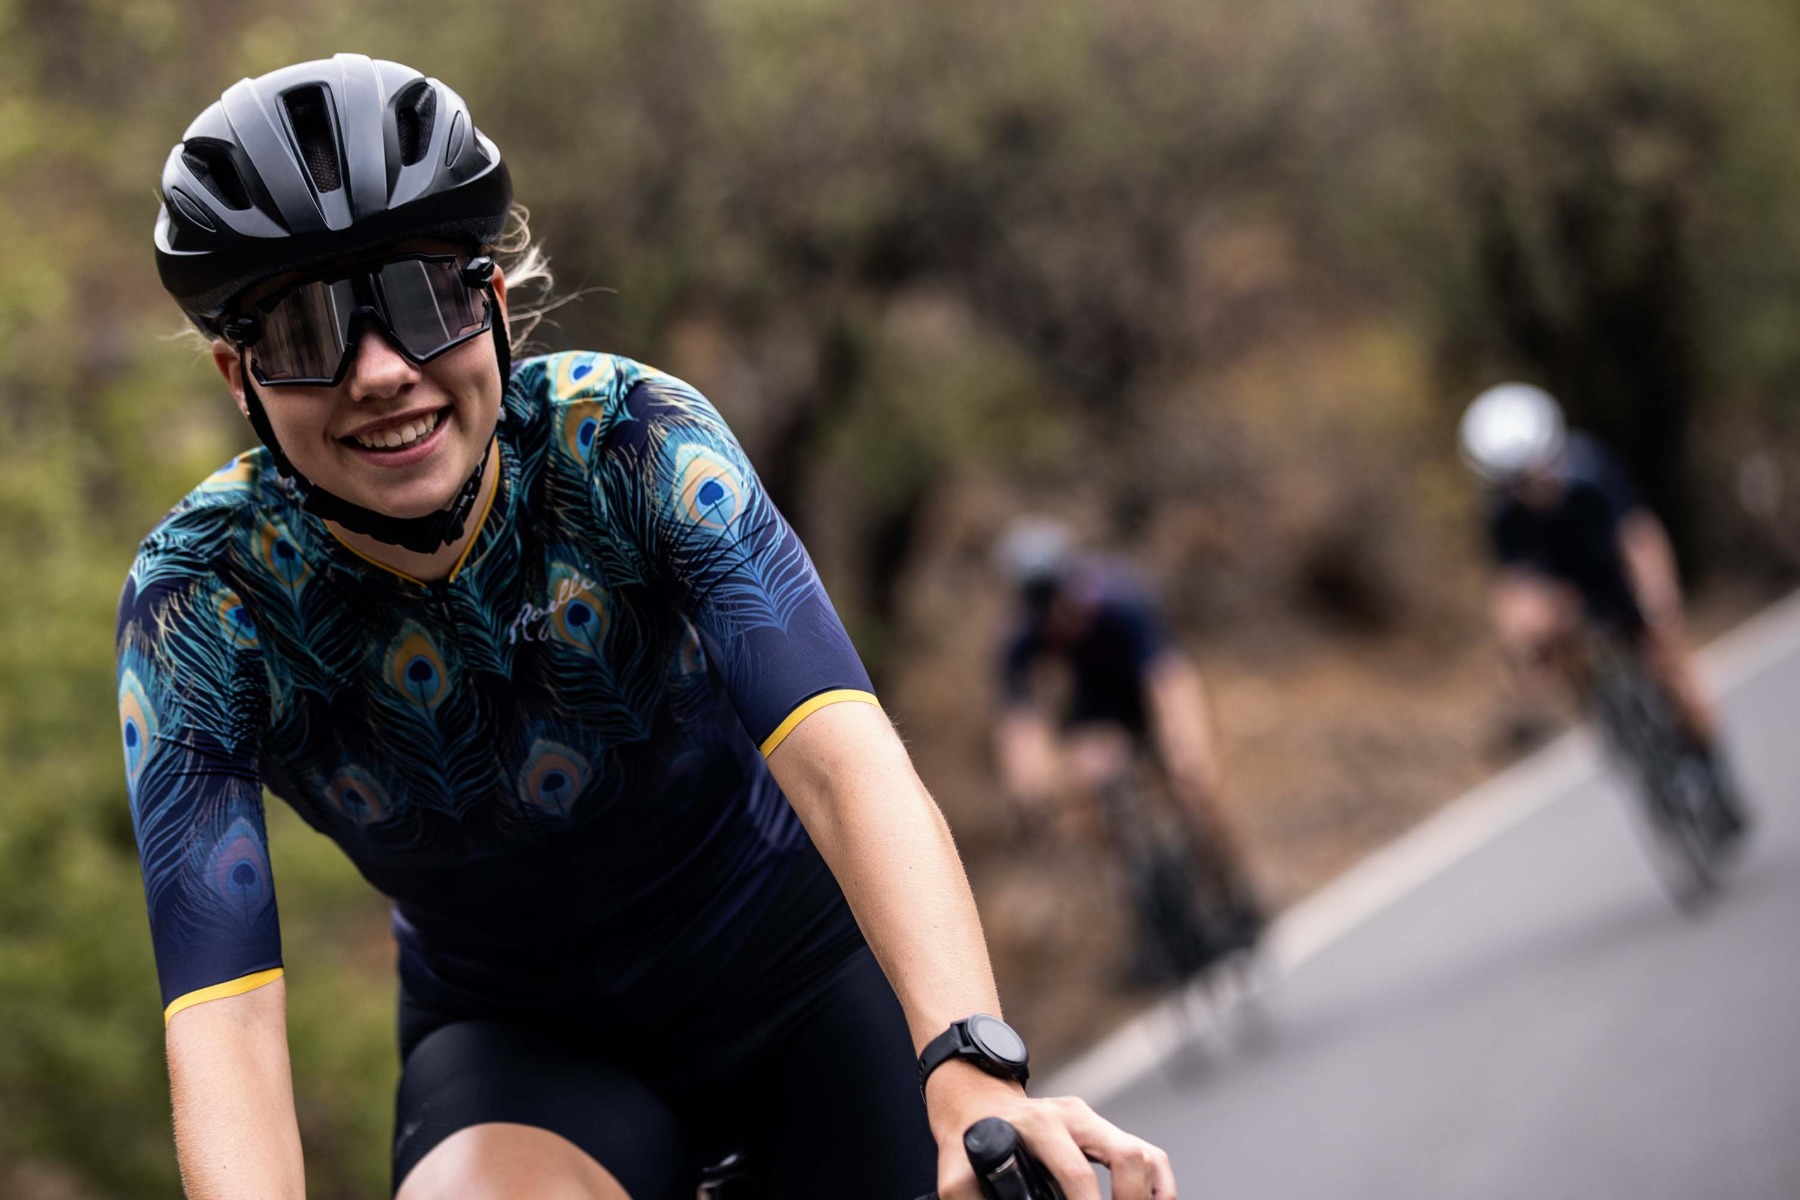 Een afbeelding van een vrouwelijke fietser met een grote glimlach op haar gezicht tijdens het wielrennen, gekleed in een Rogelli fietshelm voor optimale veiligheid en stijl op de weg.